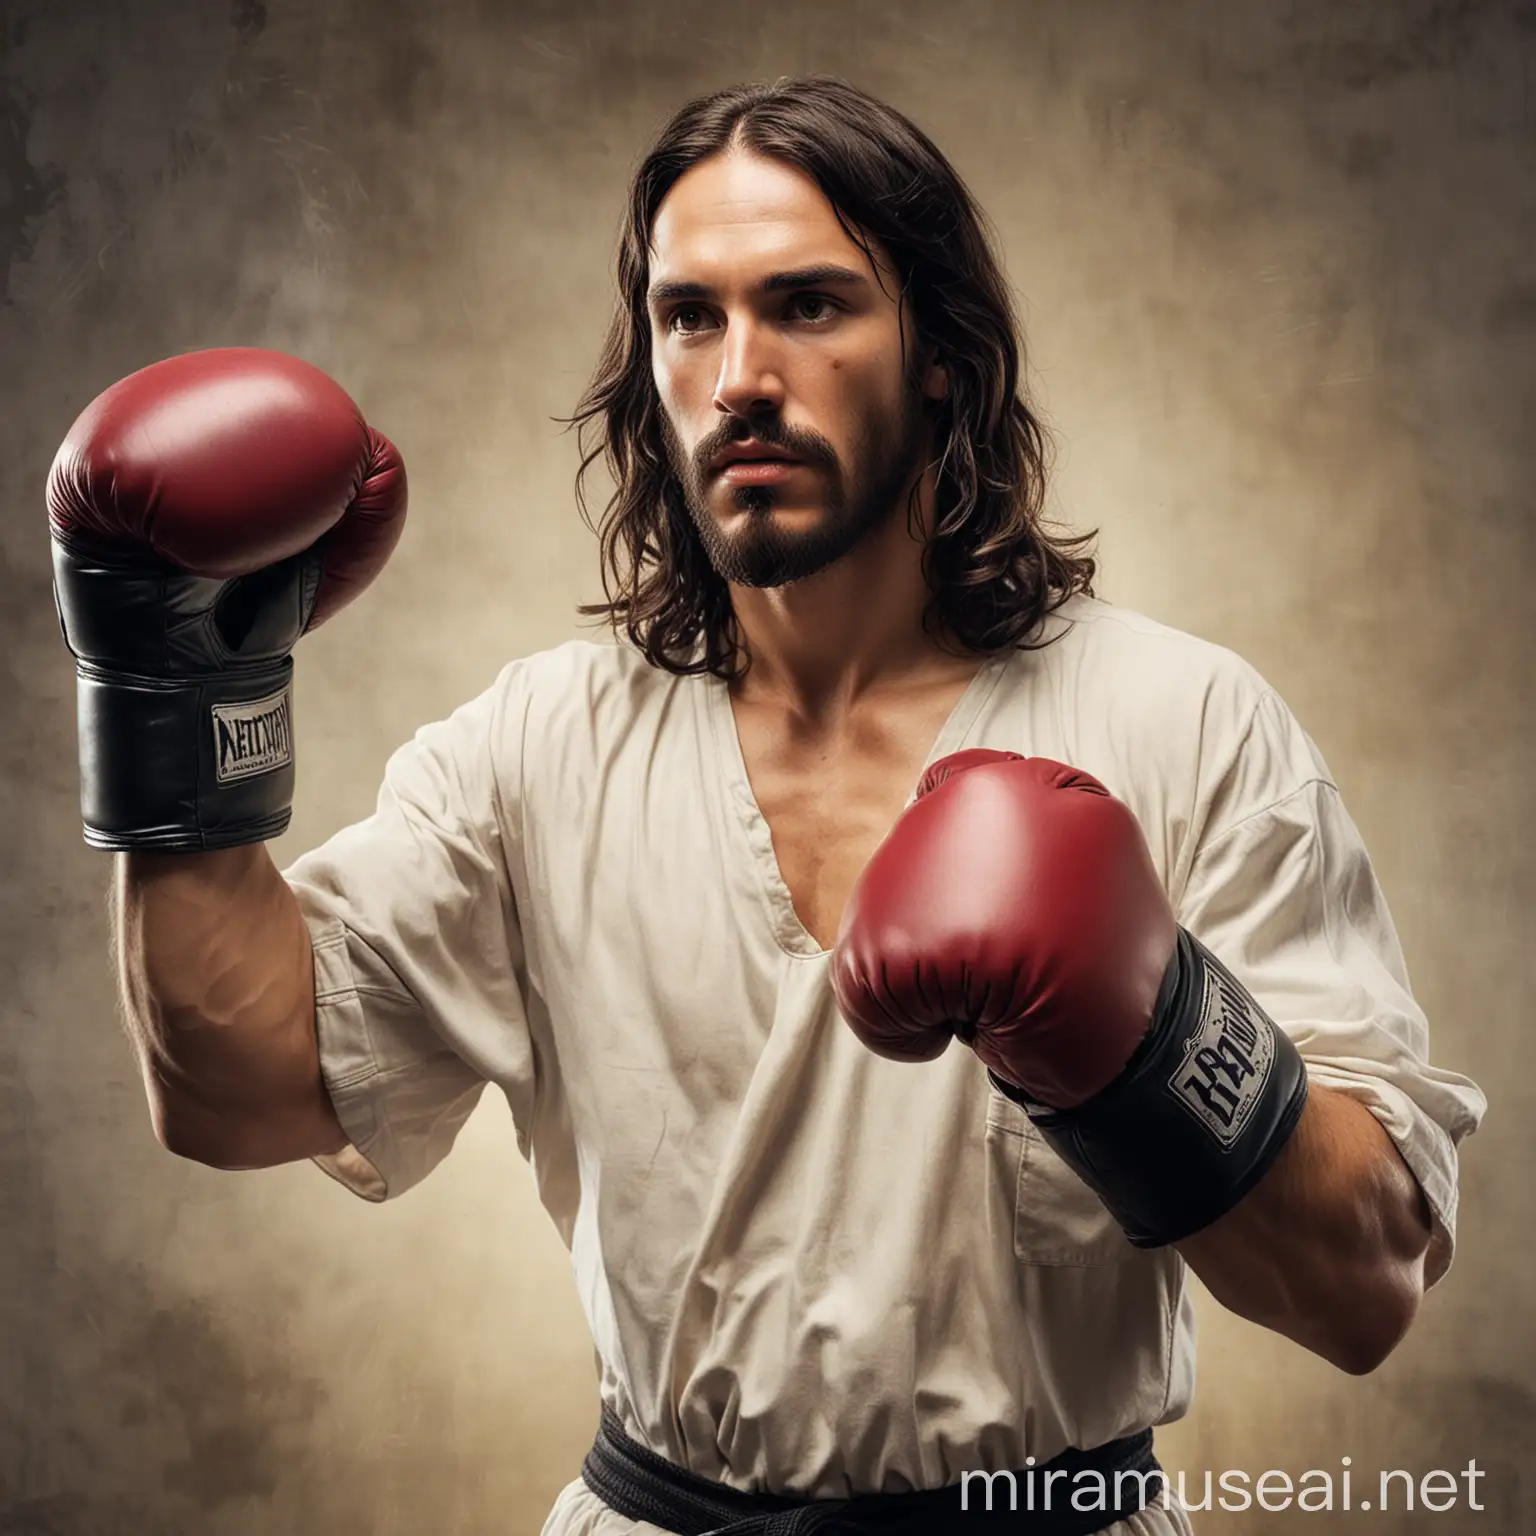 Jesus Christ in boxing gloves